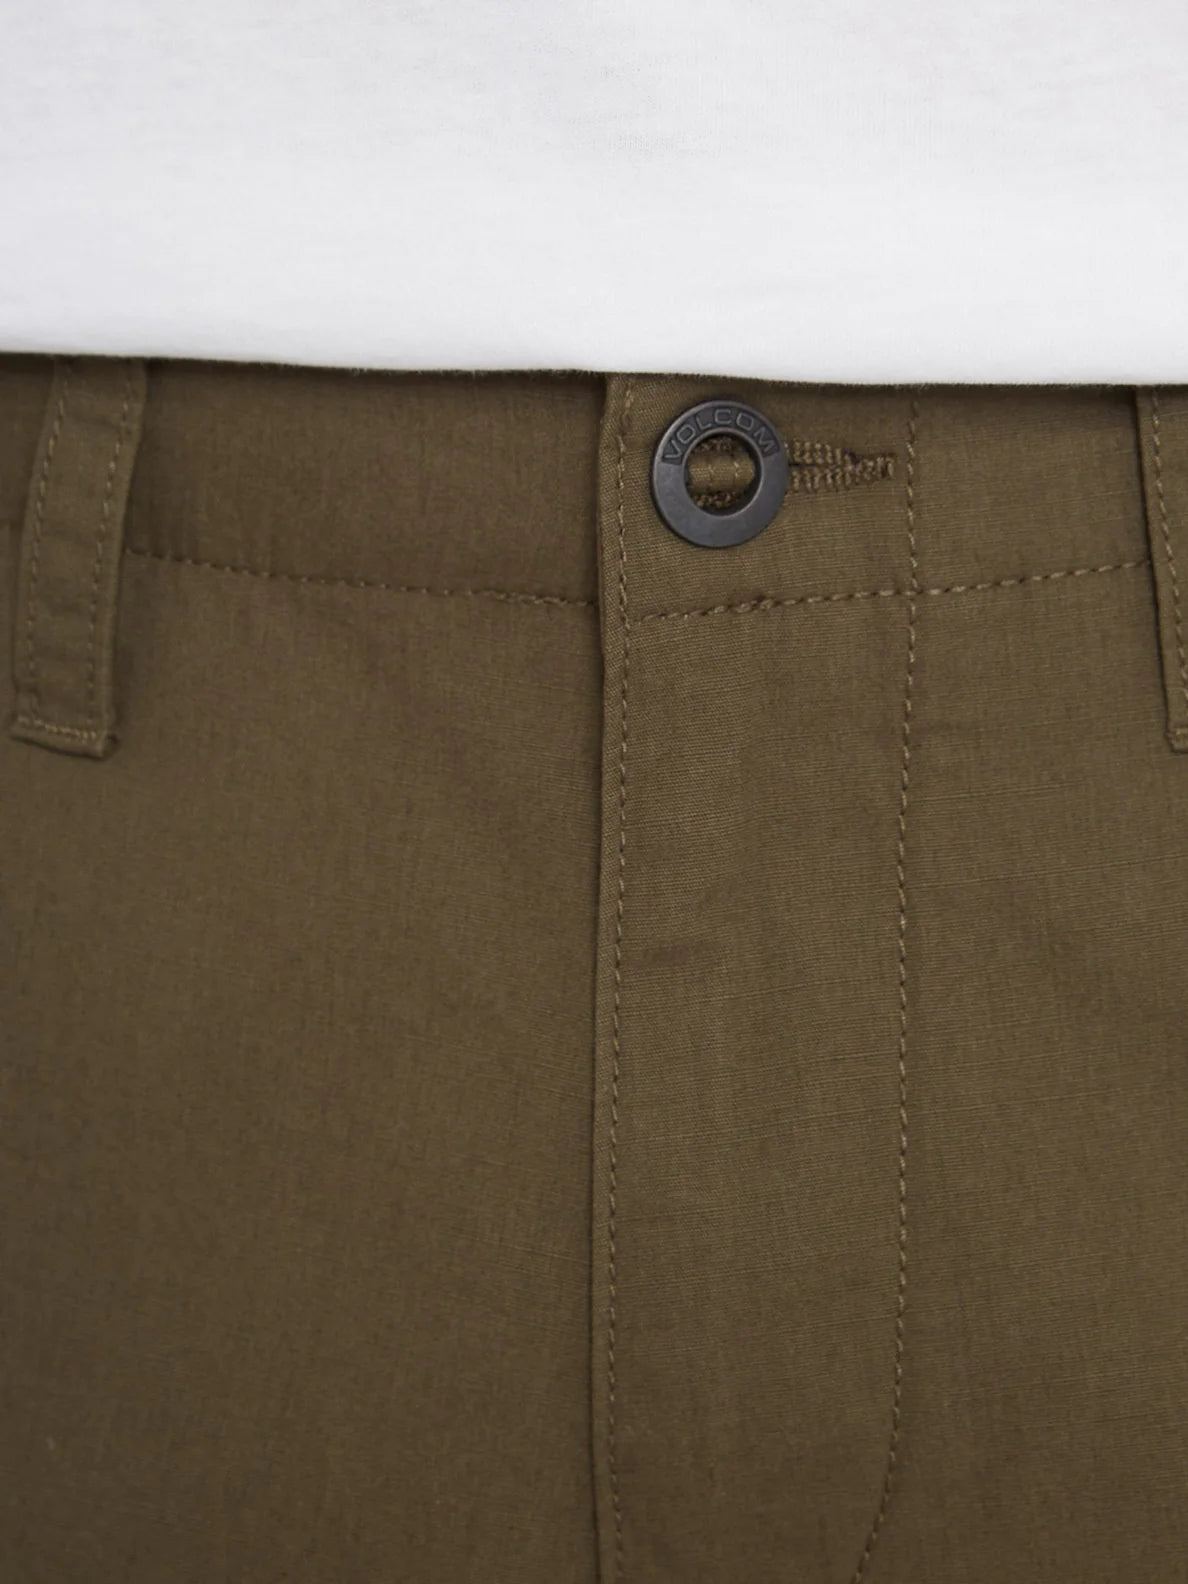 Pantalón Corto Volcom March Cargo Short - Military | Pantalones cortos de Hombre | Todos los pantalones de hombre | Volcom Shop | surfdevils.com